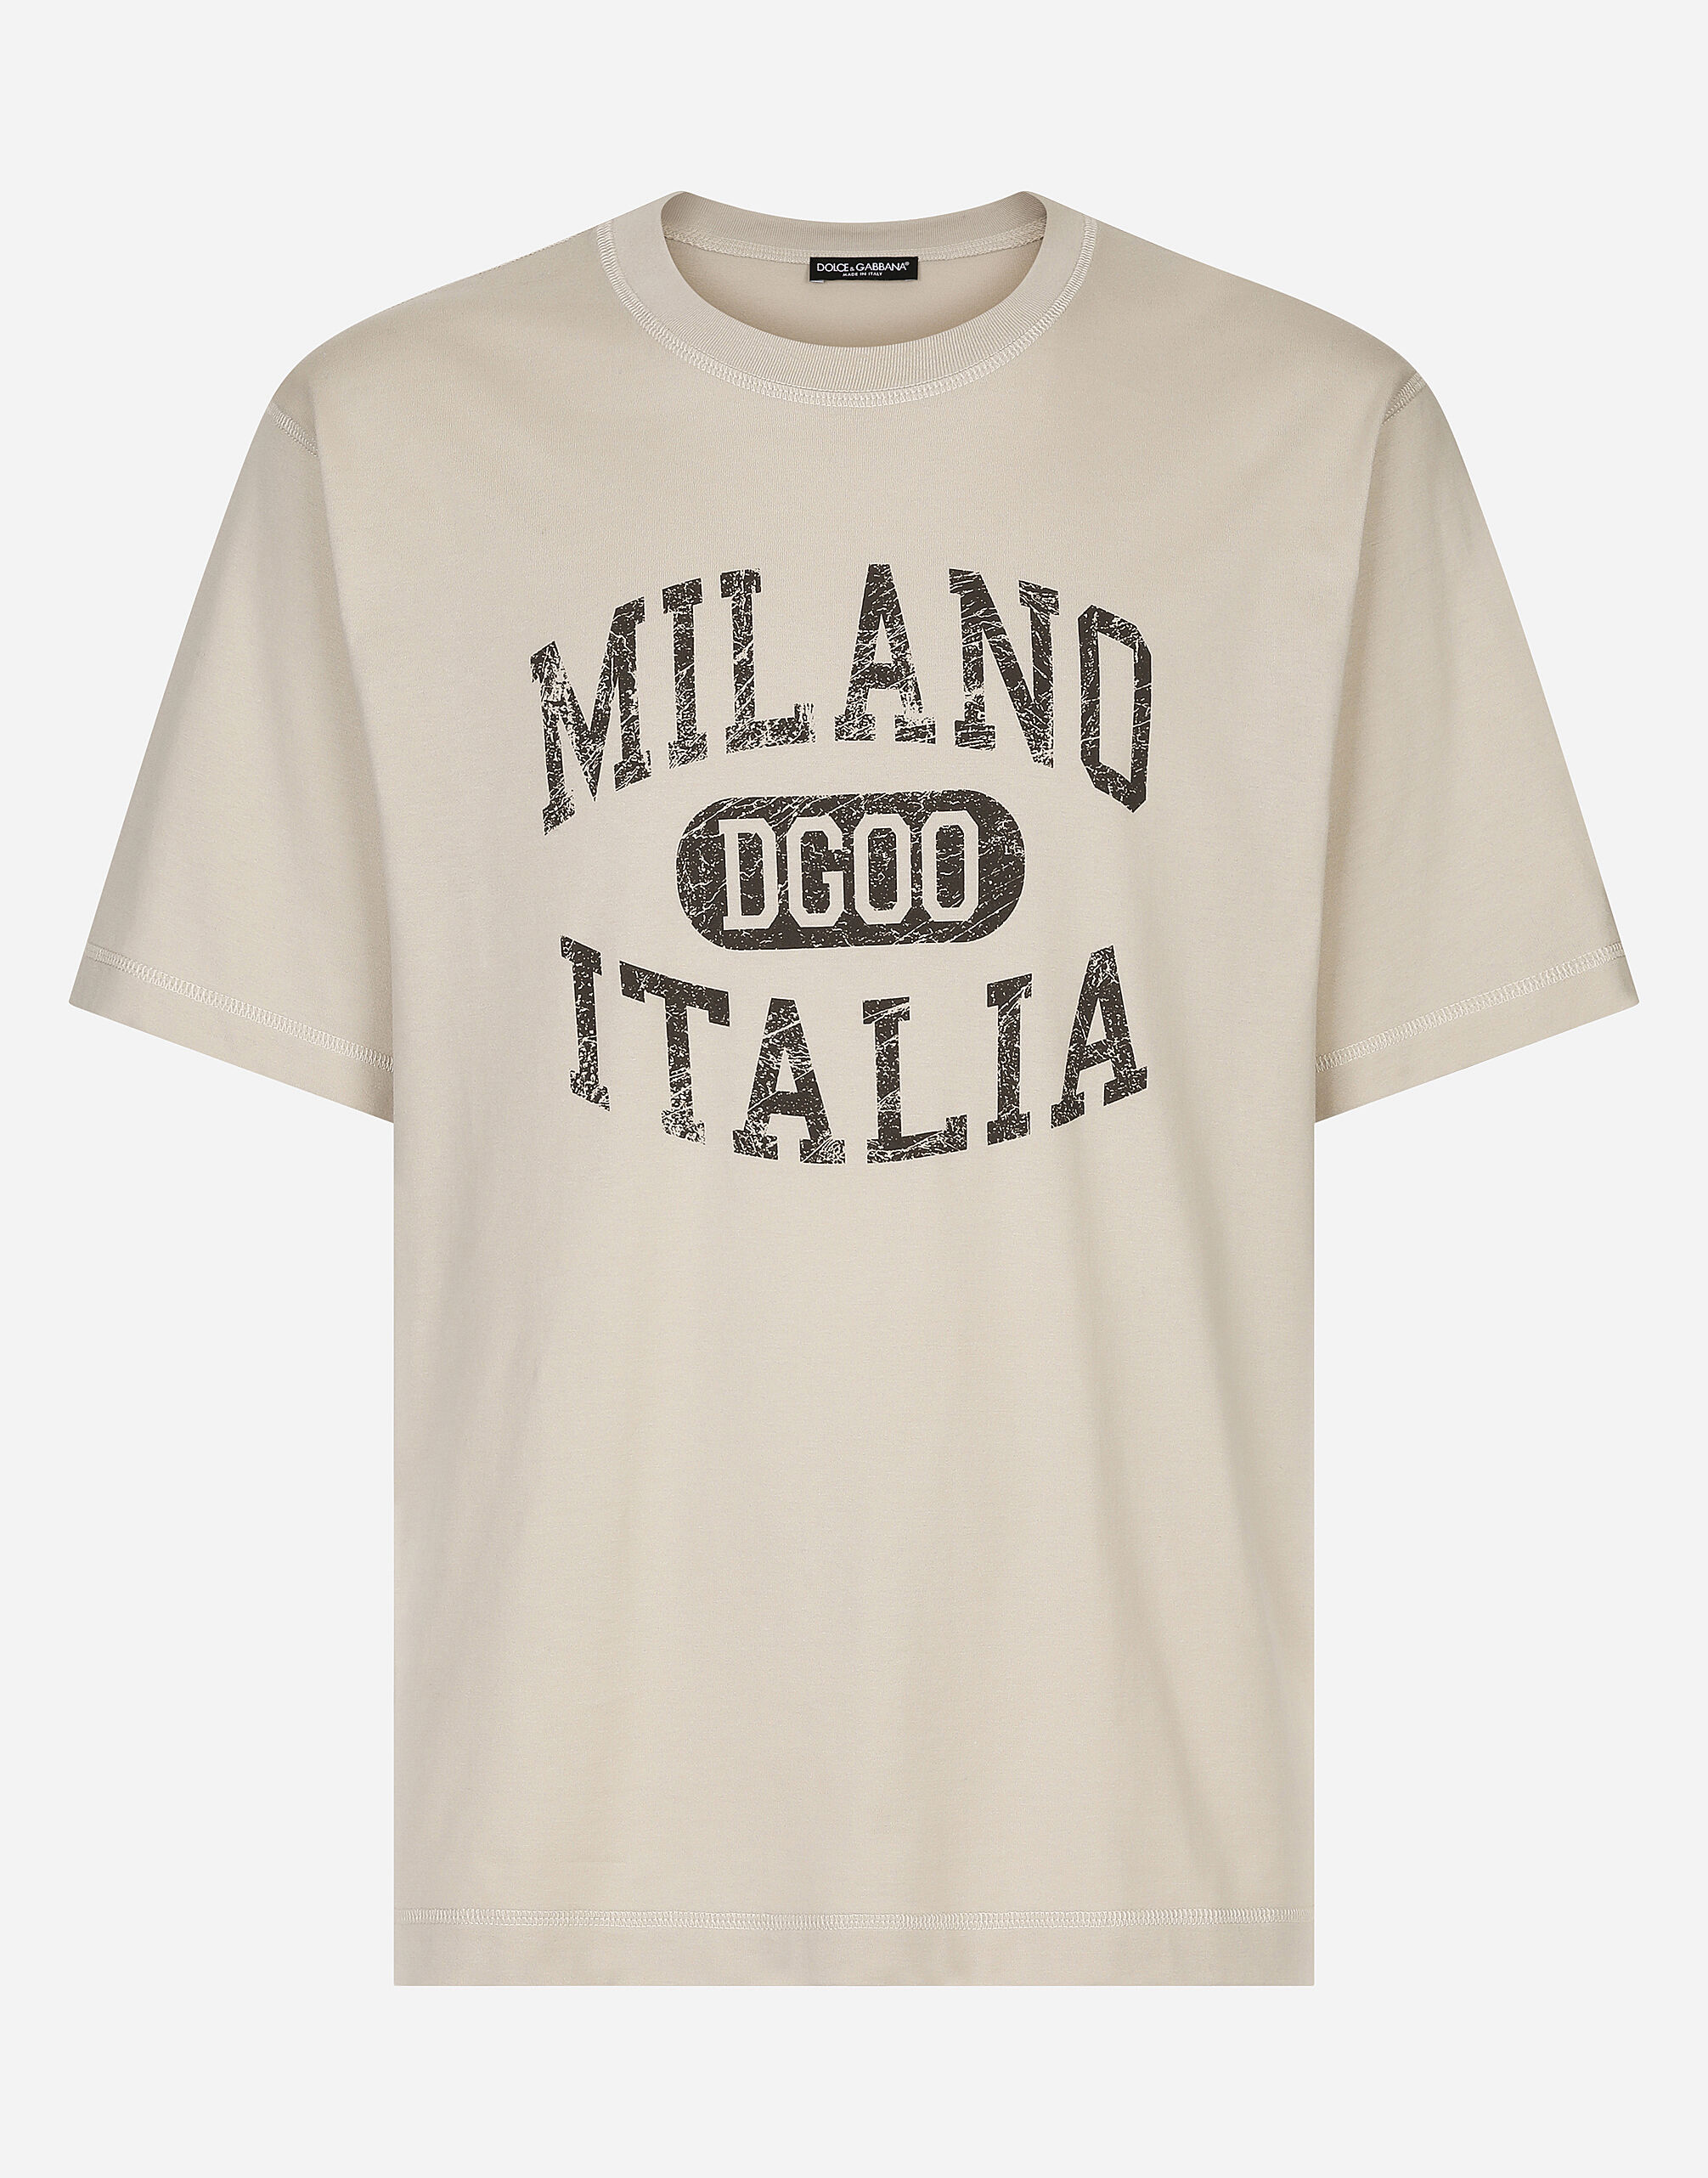 Dolce & Gabbana Cotton T-shirt with DG logo print Multicolor G8PN9TG7NPZ